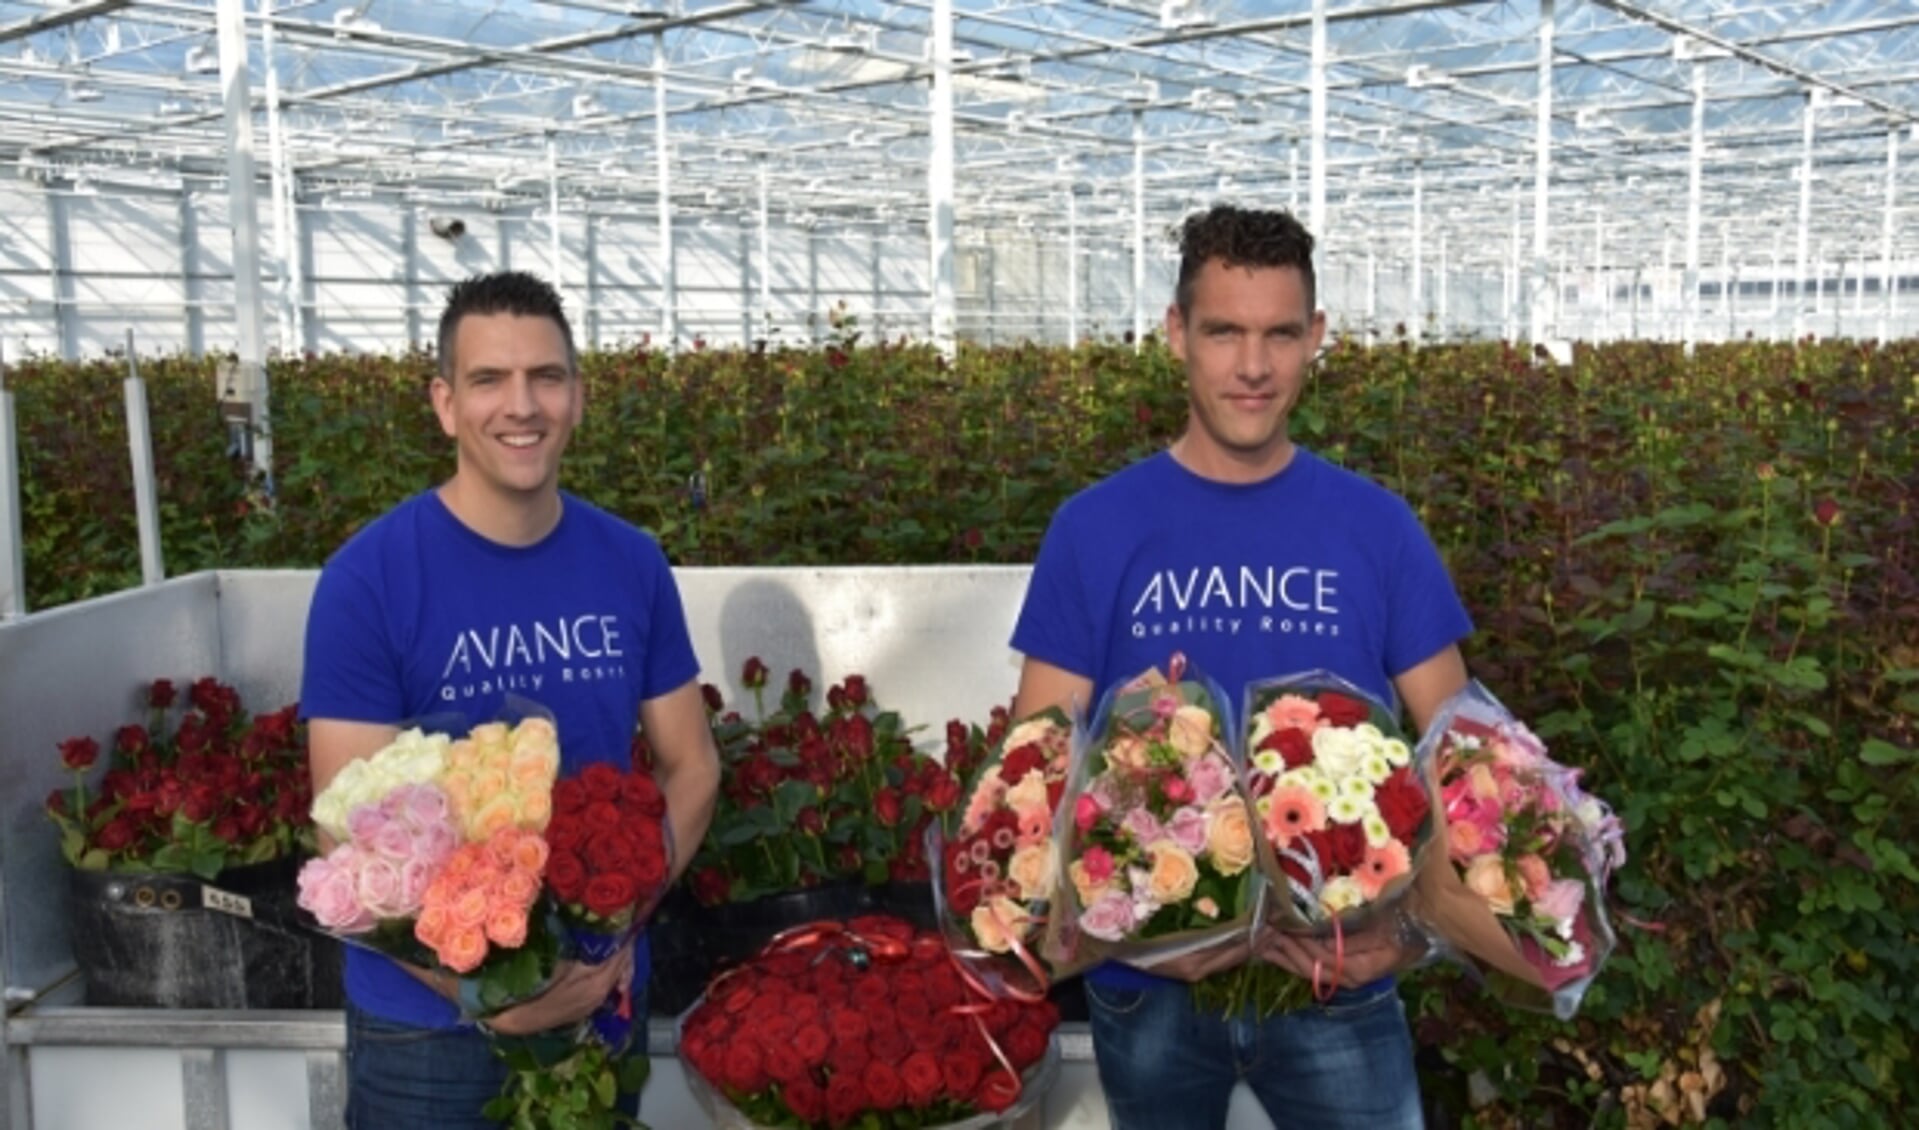 (Links) Frank en (rechts) Robin, te midden van de prachtige rozen. 